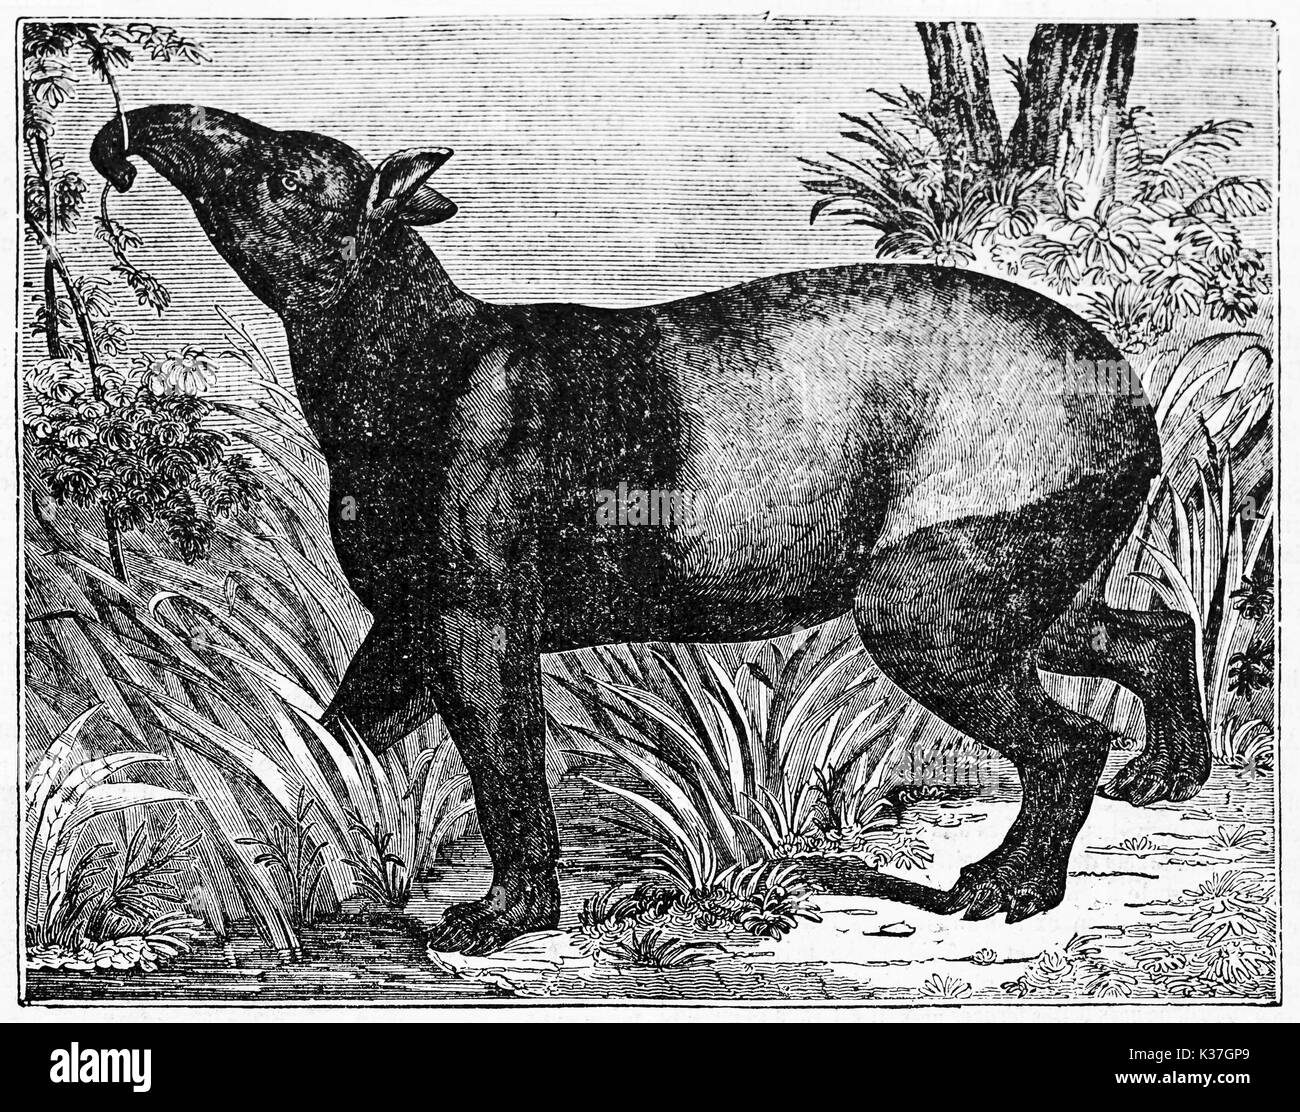 : La malese tapiro (Tapirus indicus) in cerca di cibo vegetale nel suo ambiente naturale, una foresta o una giungla. Vecchia illustrazione di autore non identificato pubblicato il Magasin pittoresco Parigi 1834 Foto Stock